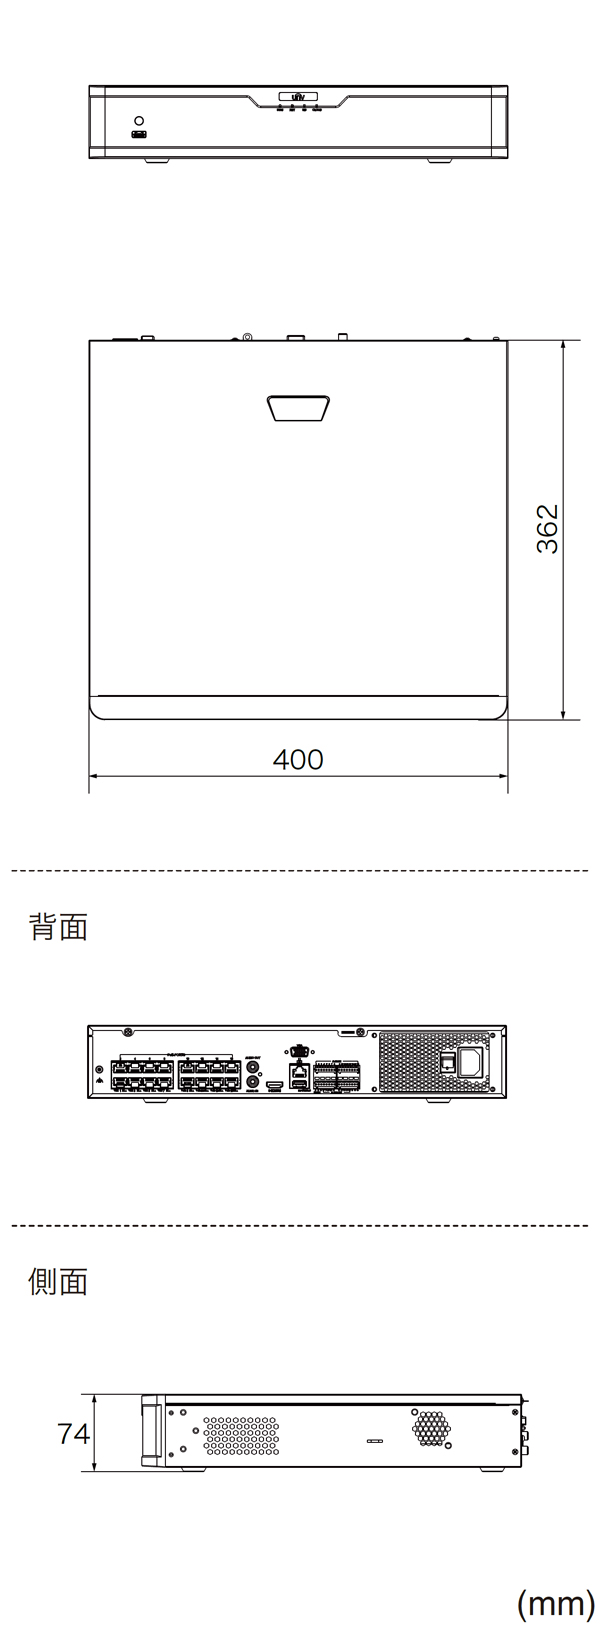 NVR304-32S-P16 本体寸法